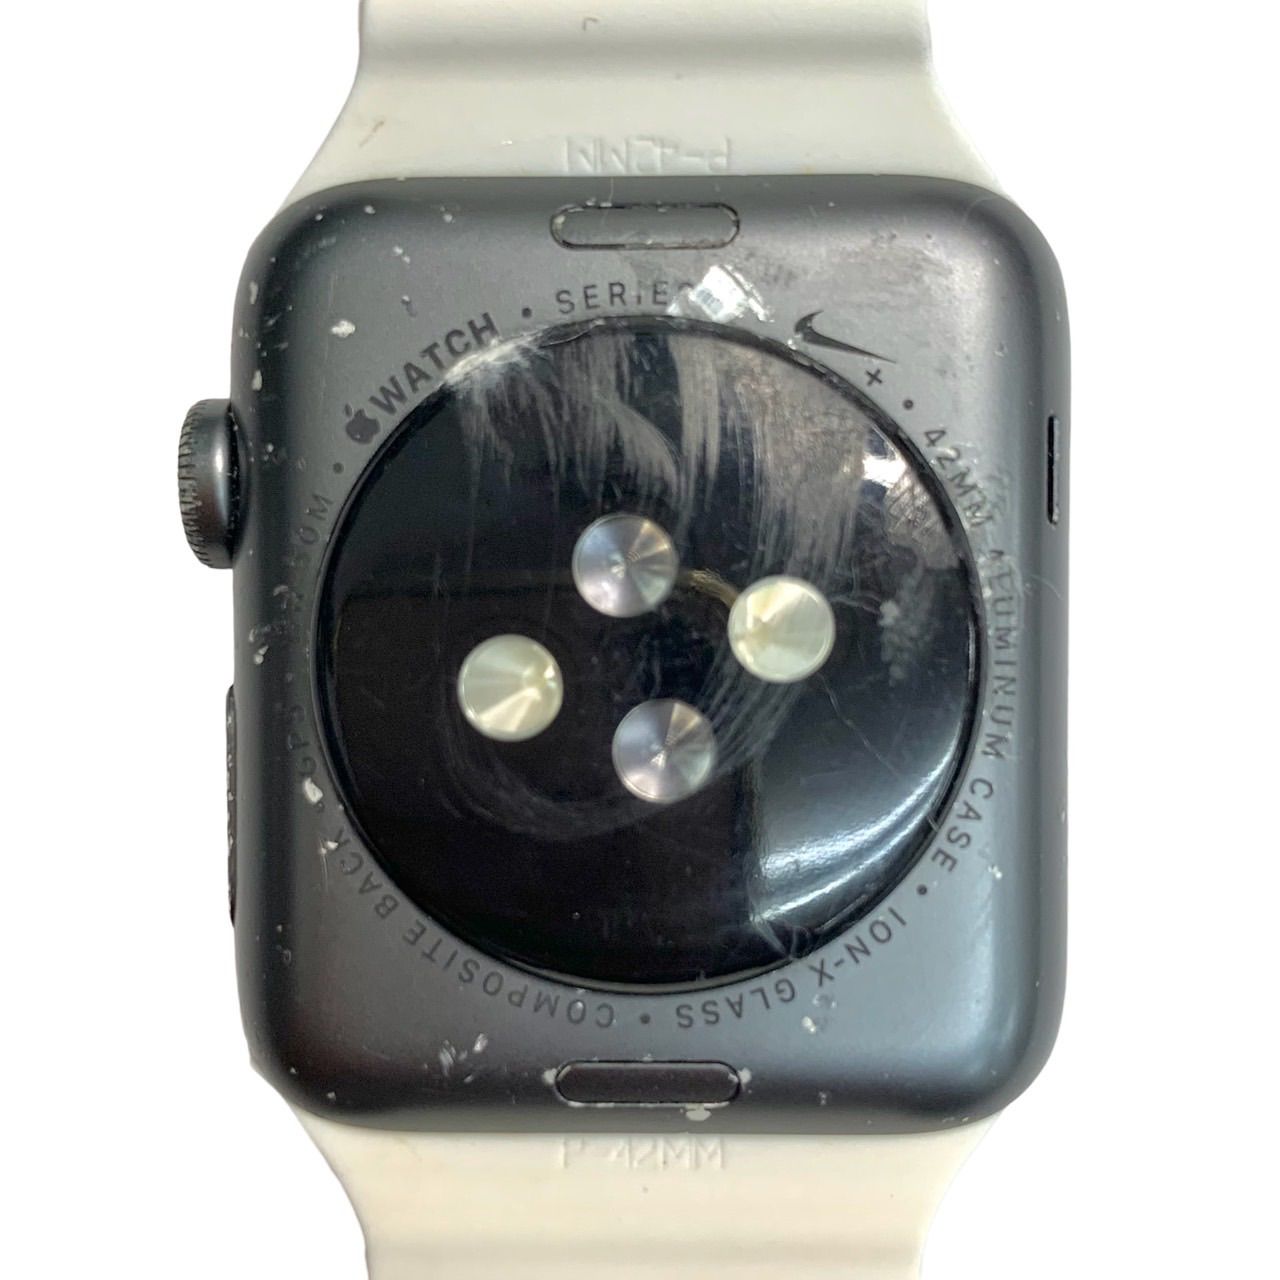 美品⭐️アップル ウォッチ】 ナイキ シリーズ 3 (GPS) Apple Watch 3 